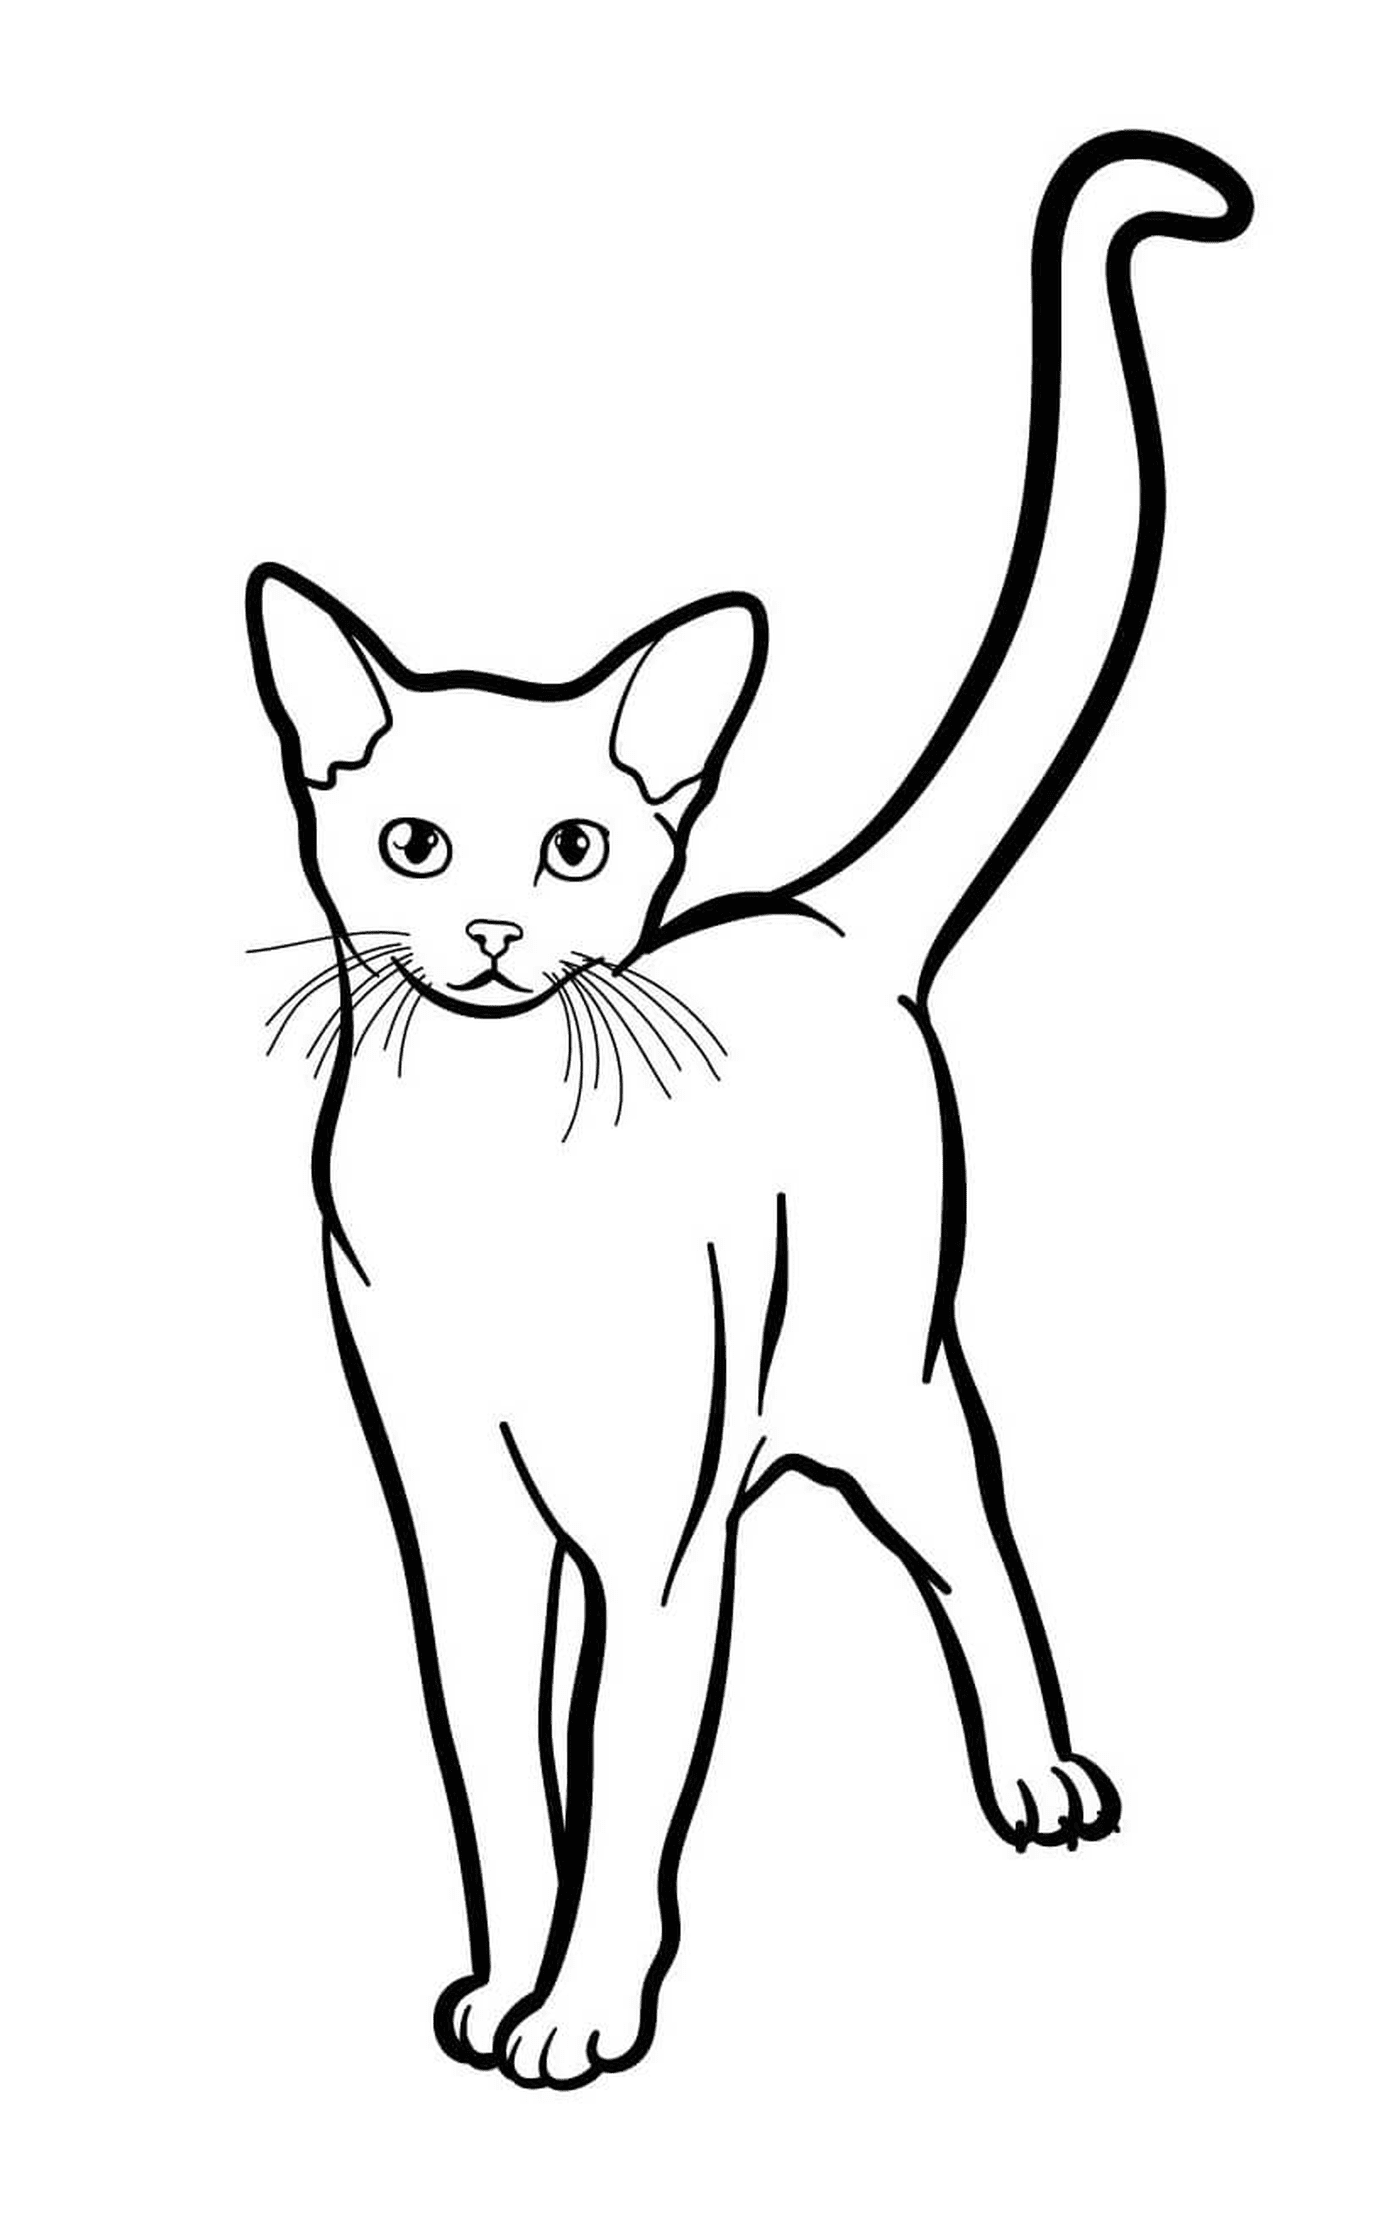  Abissiniano, il gatto esotico con gli occhi verdi 